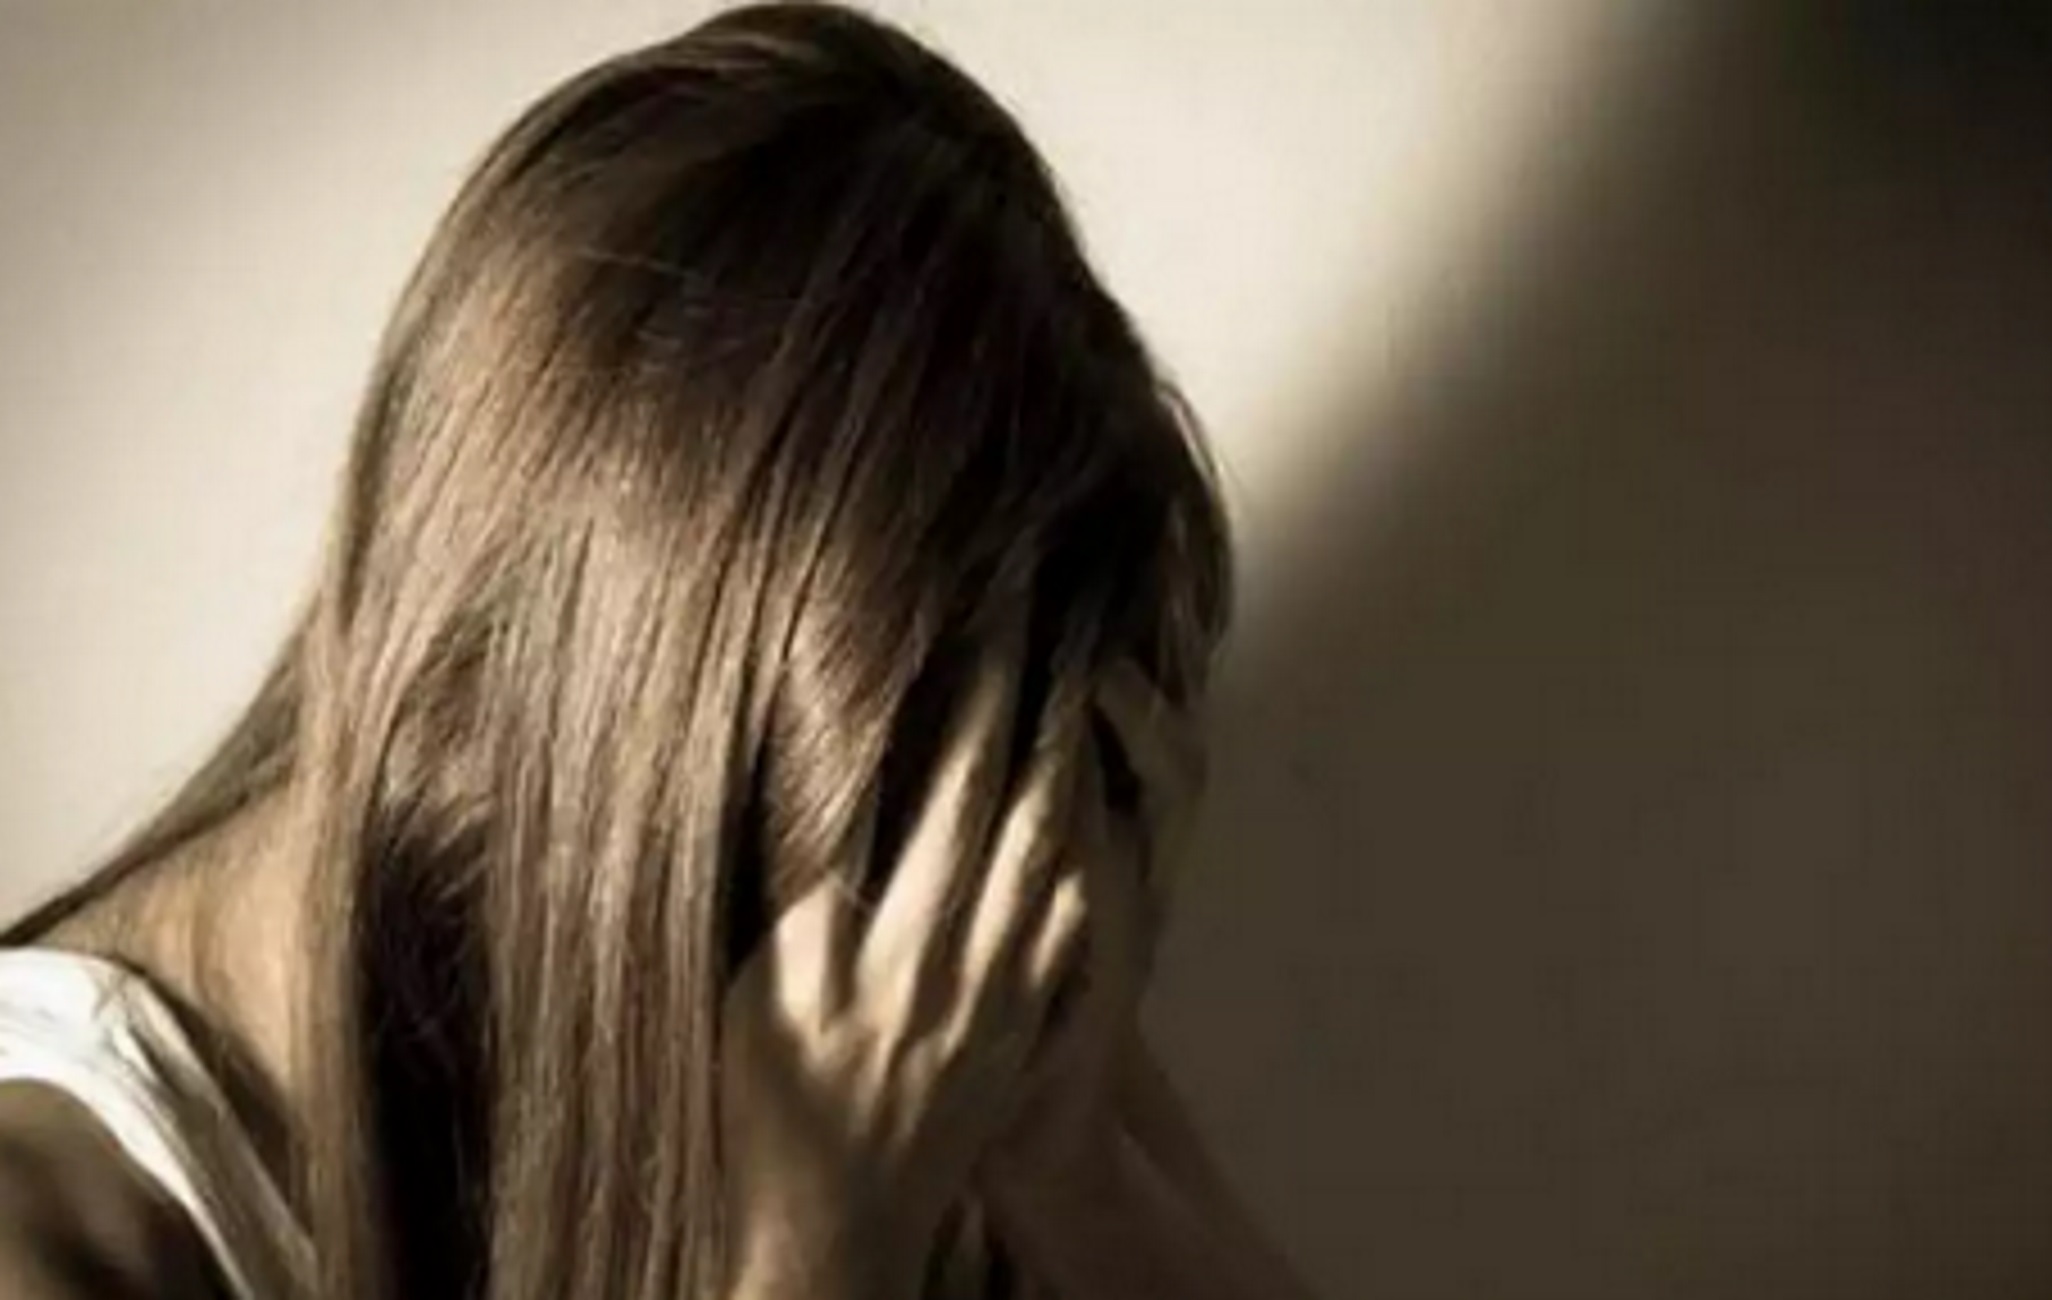 Πάτρα: Θύμα κακοποίησης μια 16χρονη από τον 25χρονο σύντροφό της – Τι καταγγέλλει η μητέρα του κοριτσιού